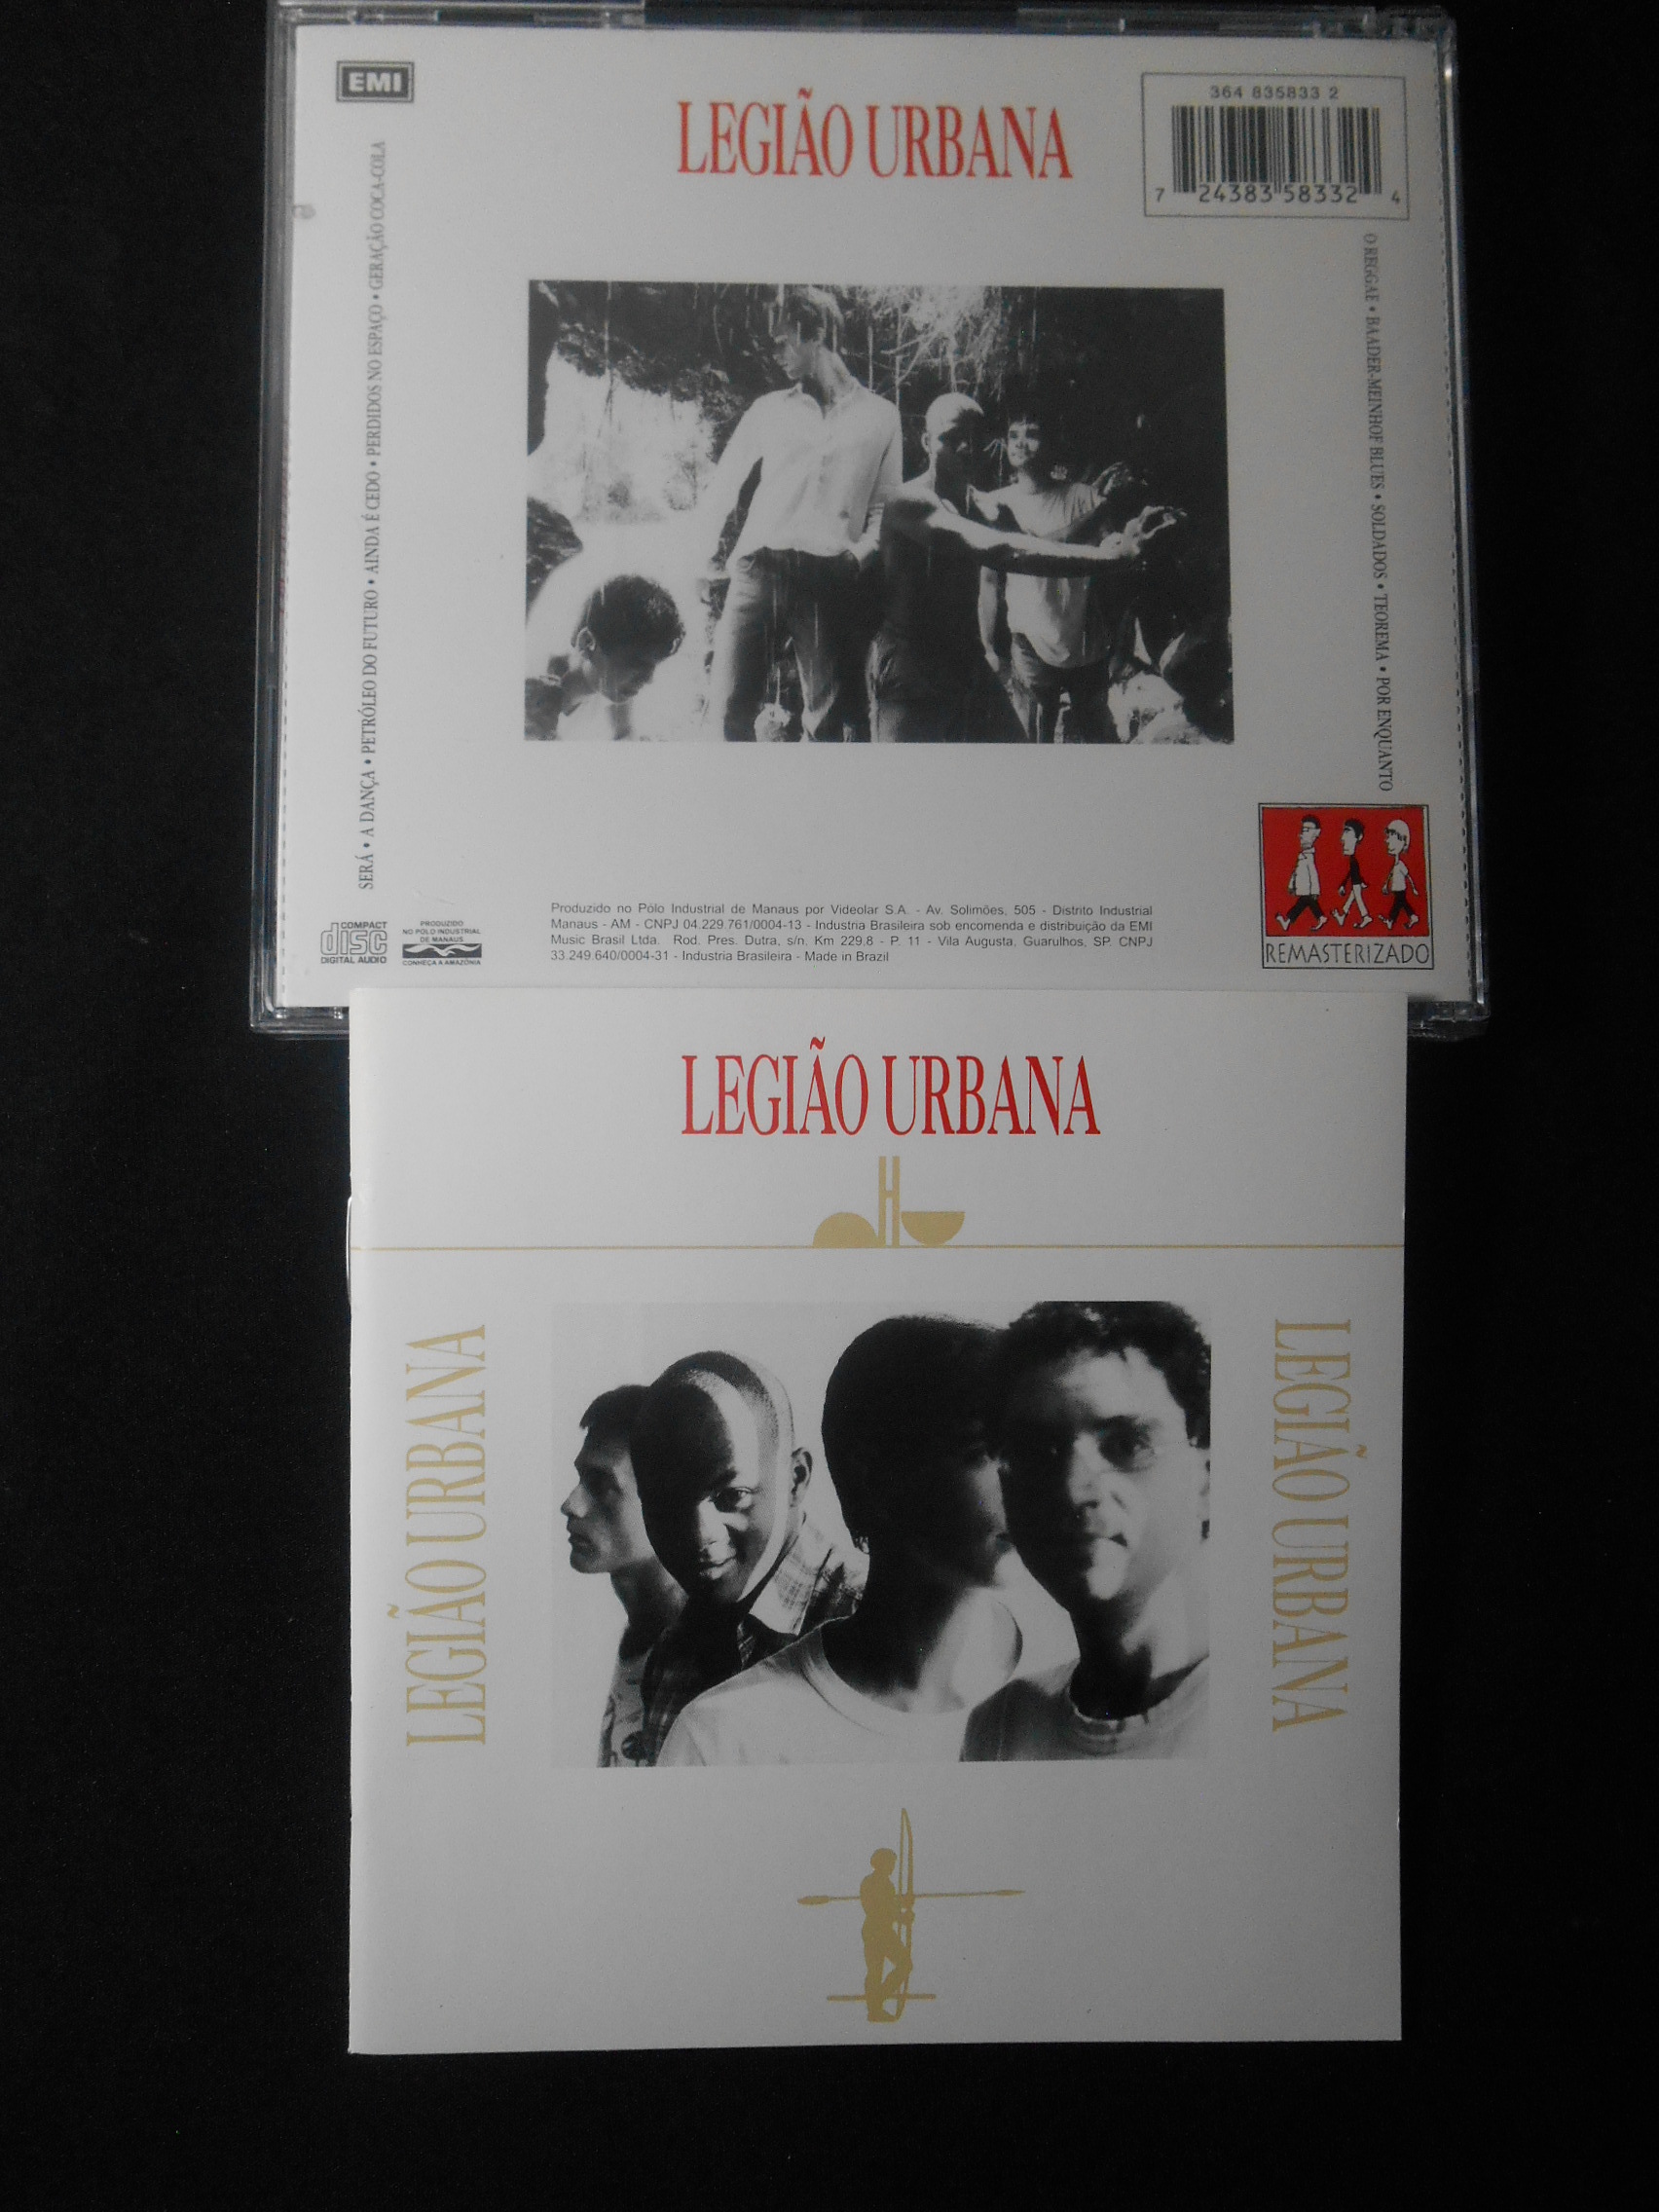 CD - Legião Urbana - 1985 (acrílico)